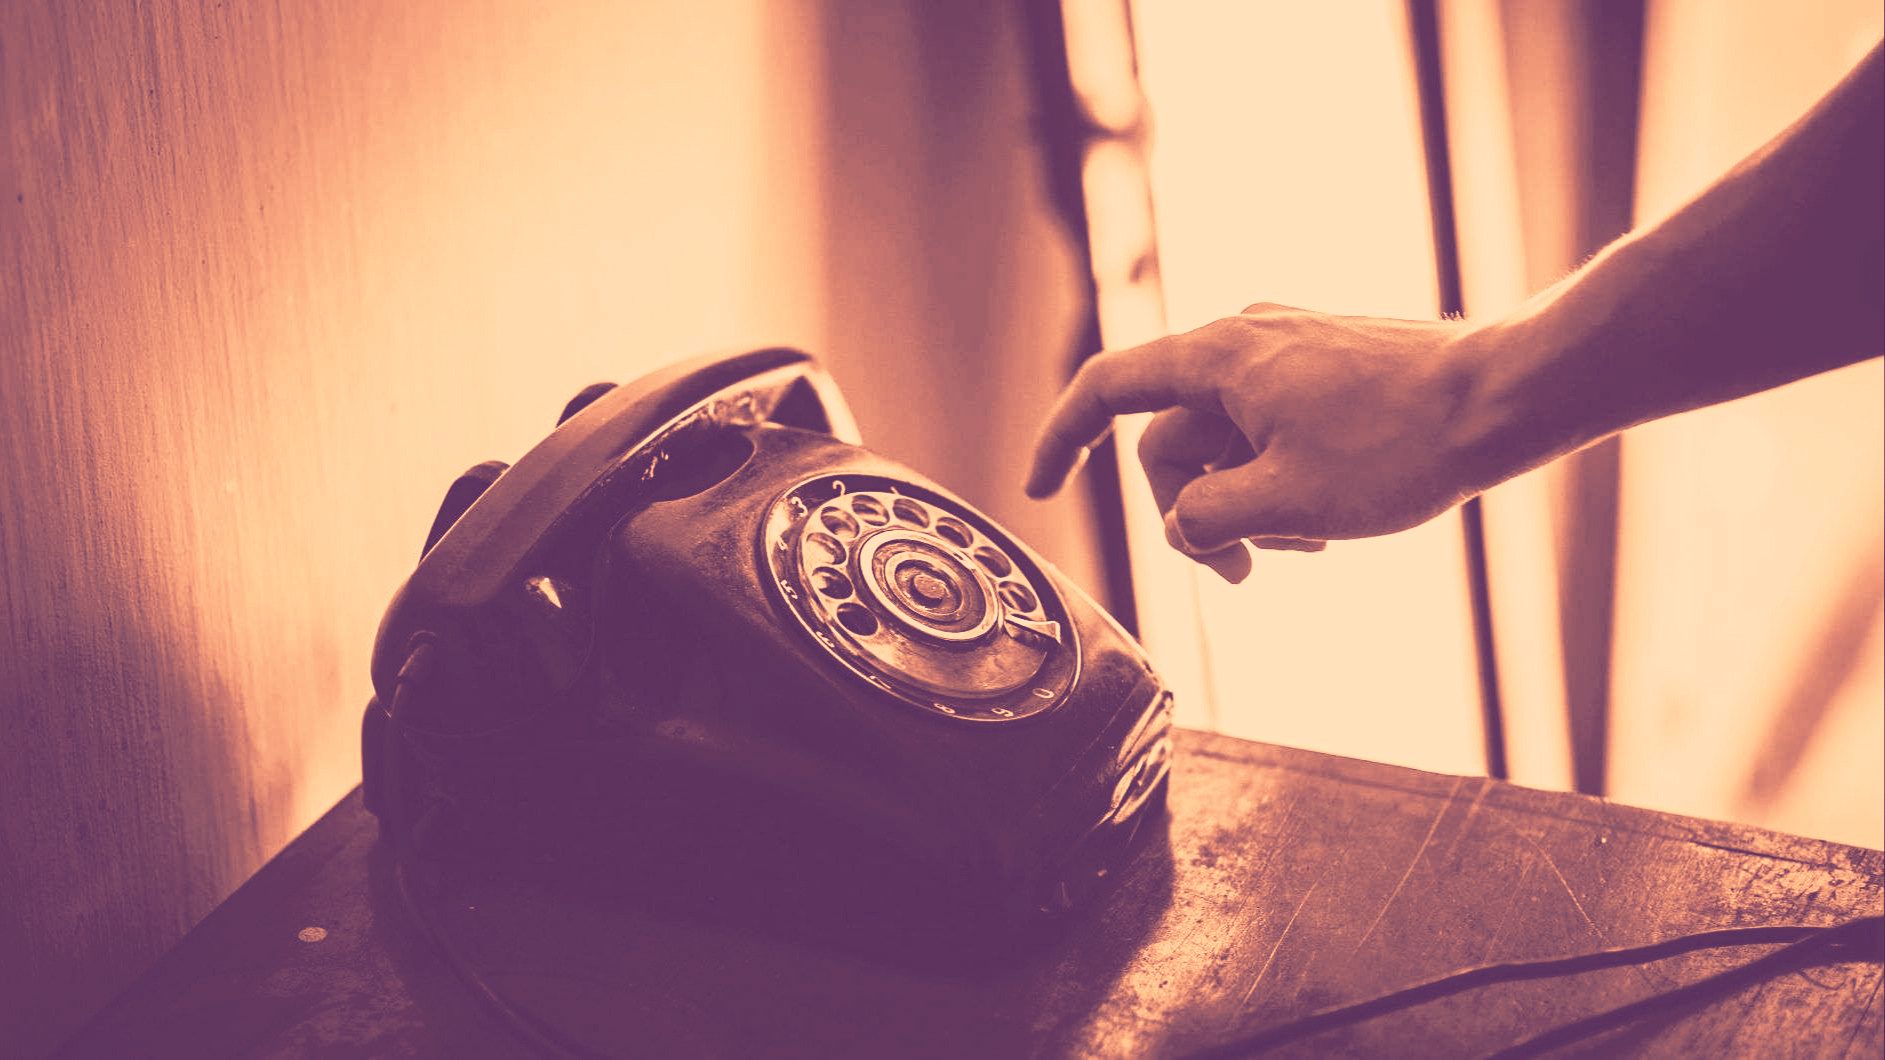 Ein auf einem Möbel stehendes altes Telefon. Eine Hand, welche zum Telefon greift ist sichtbar.